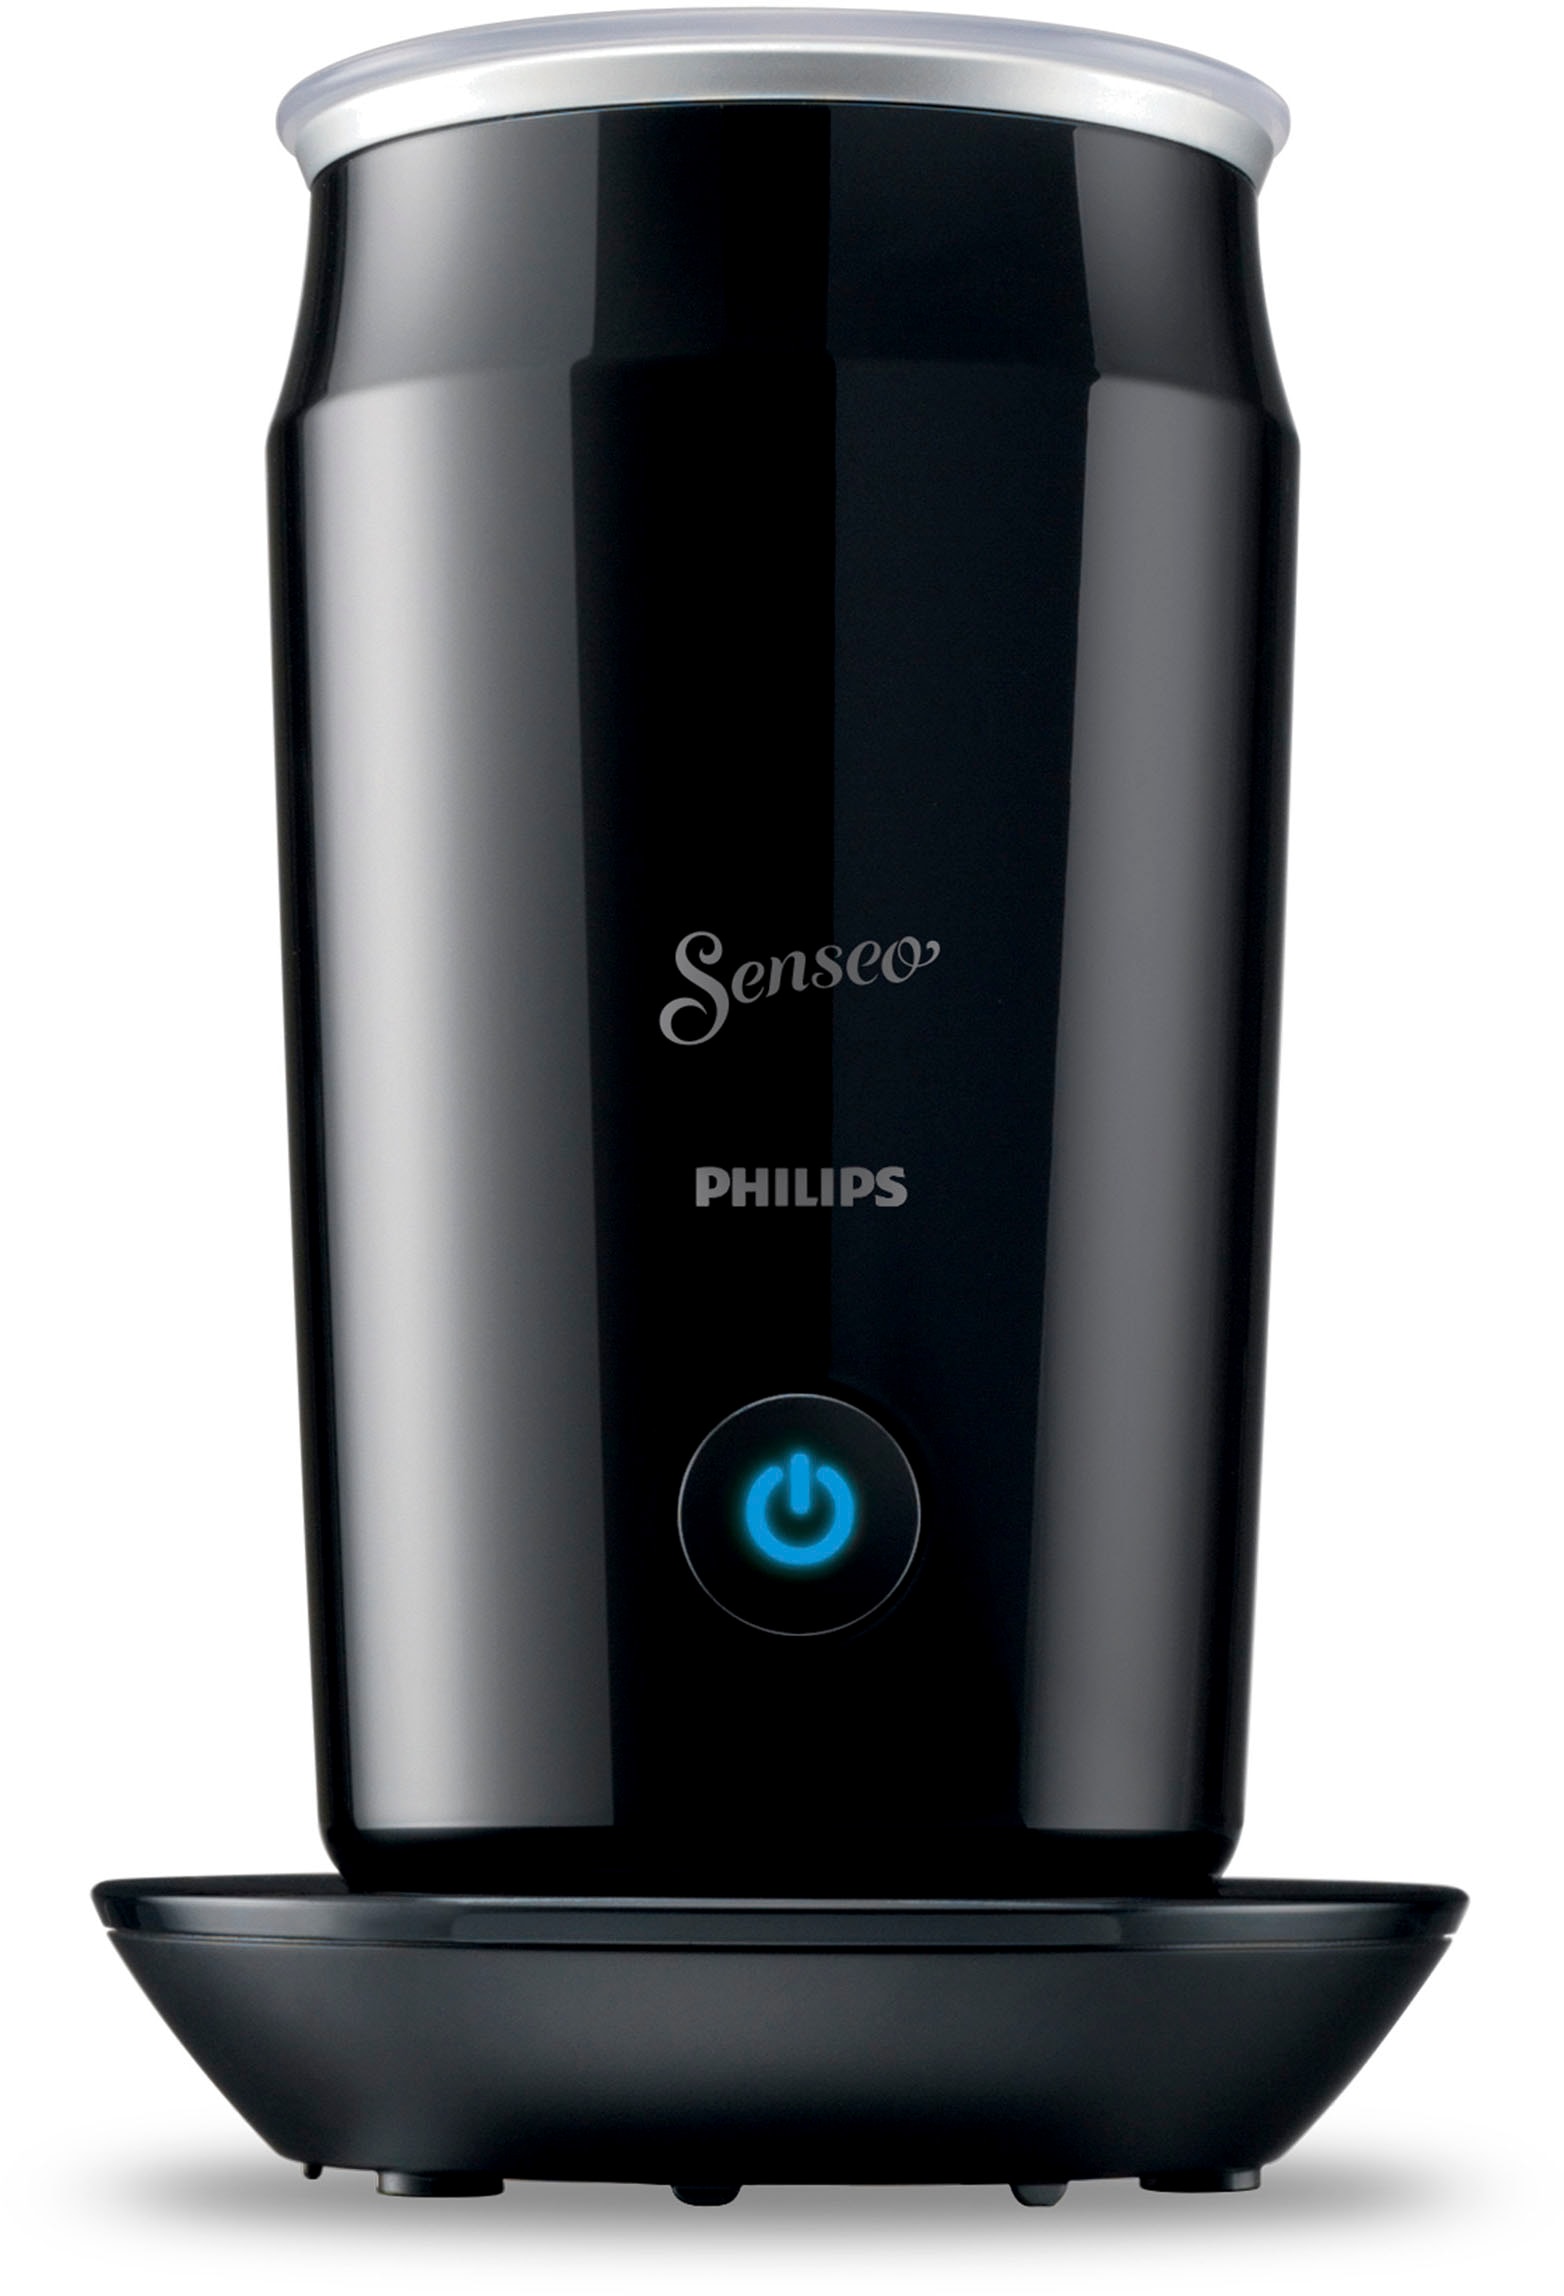 »Original Philips OTTO im inkl. jetzt online bei Wert Senseo Kaffeepadmaschine HD6553/65«, UVP 79,99 von Milchaufschäumer €